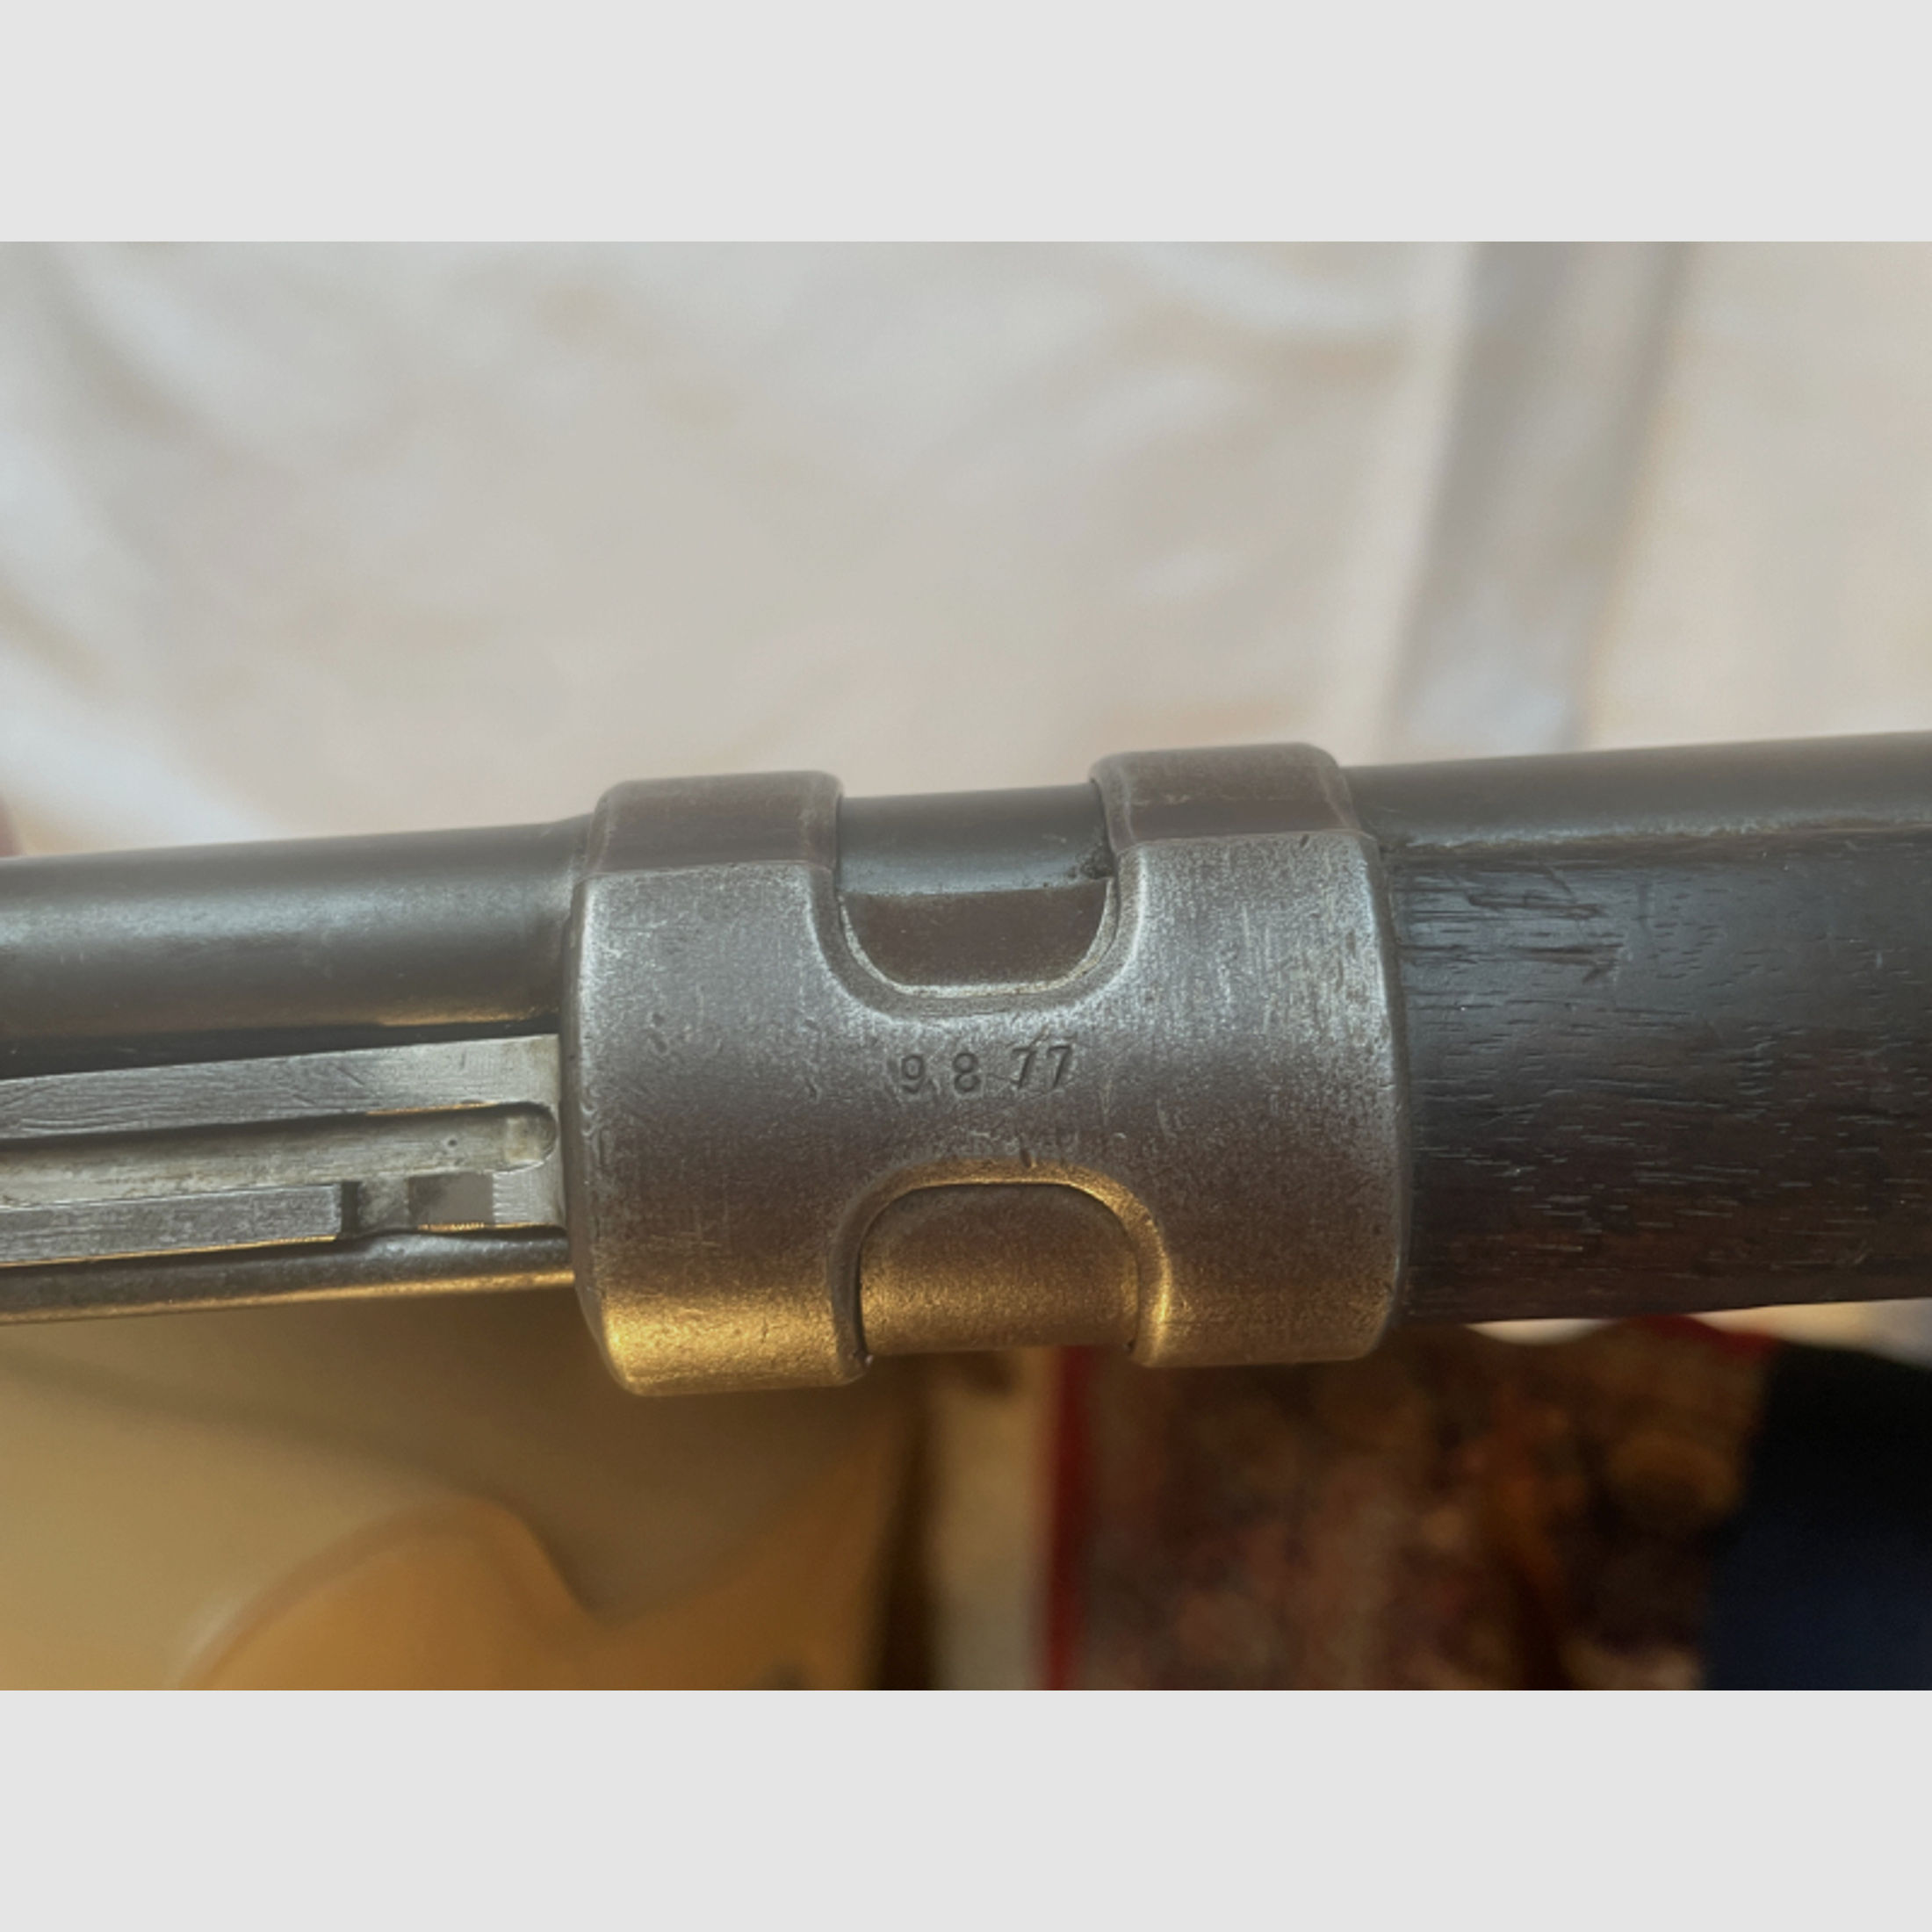 K98k, Mauser, S/42, 8x57 IS, nummerngleich